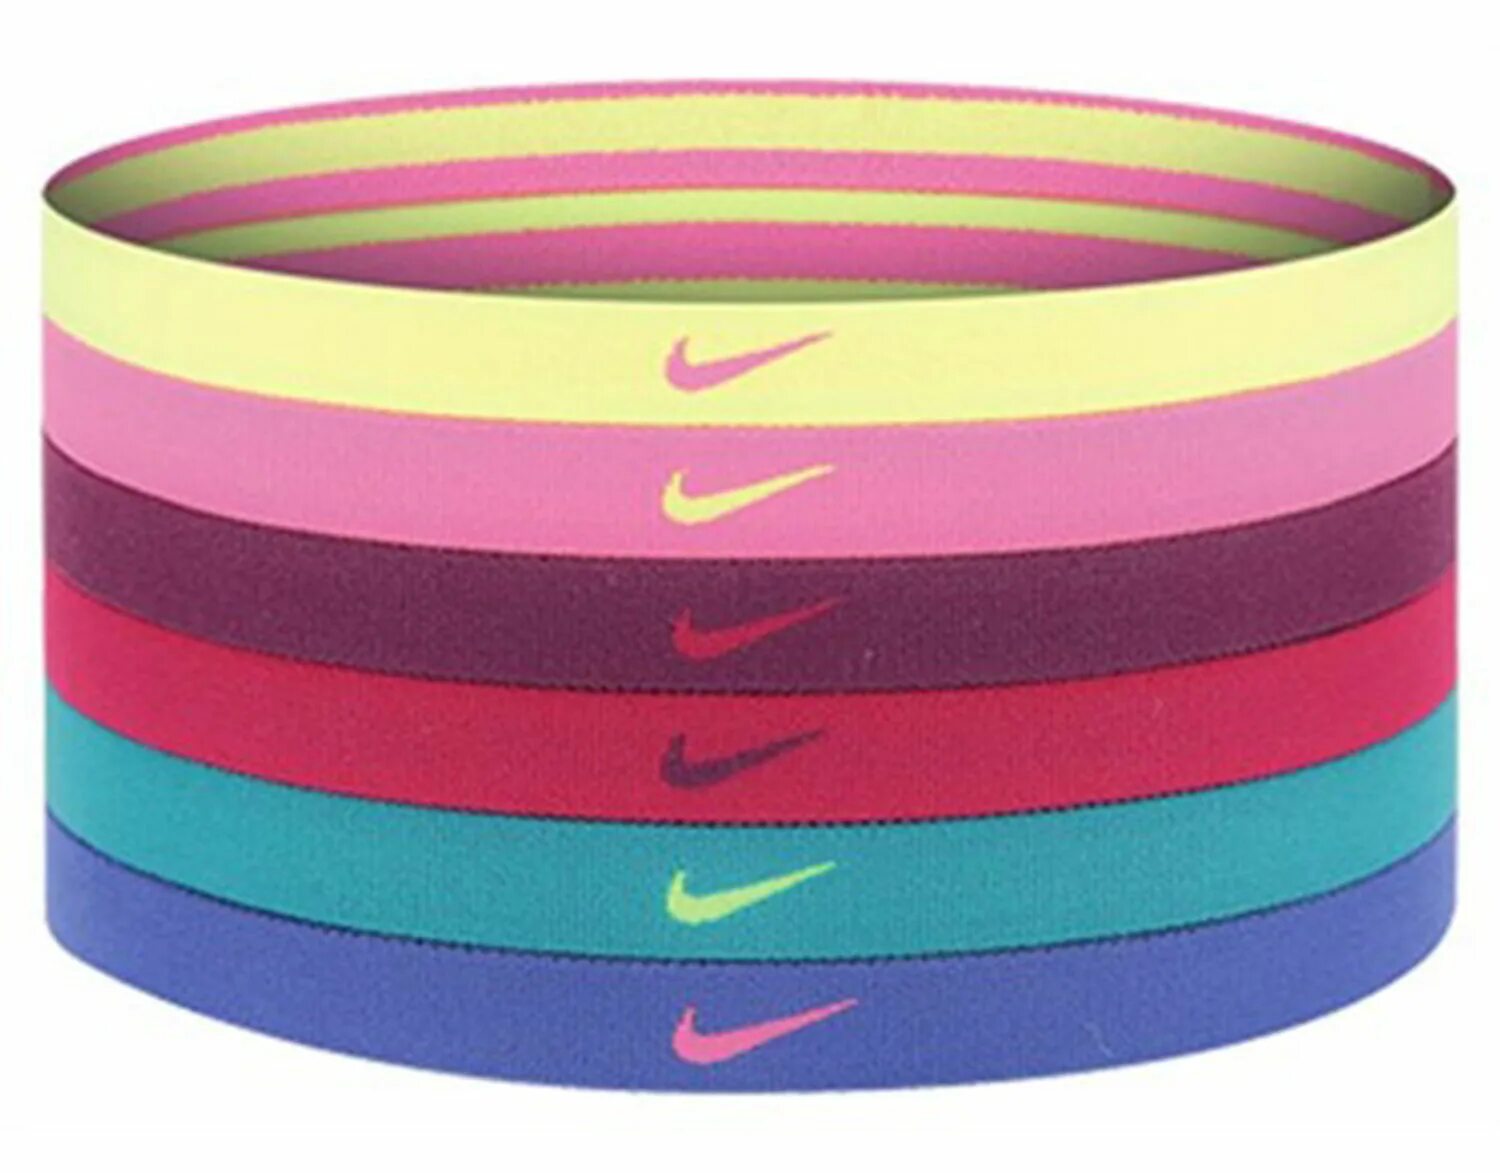 Резинка для волос Nike Swoosh Sport Headbands 6 шт., njn92-714, различный цвет. Nike Swoosh Sport Headbands 6 шт. Резинки для волос Nike Nike-Sport Headband. Резинка для волос Nike Swoosh. Резинка найк